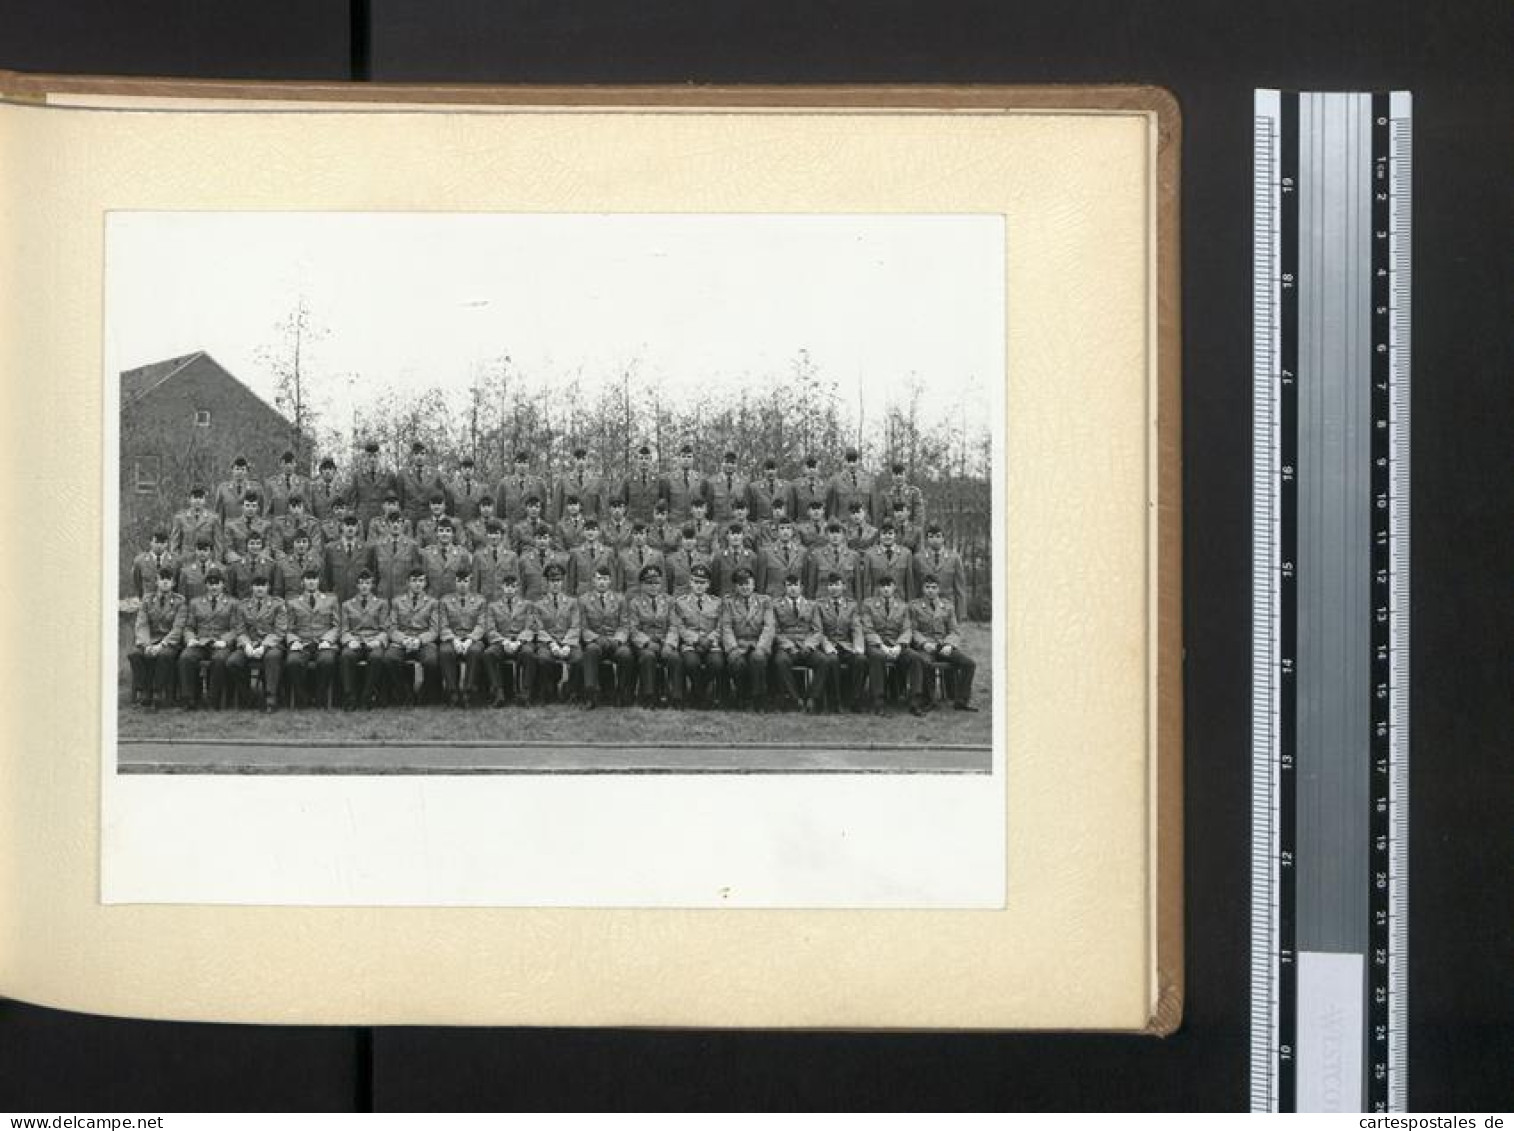 Fotoalbum mit 67 Fotografien Bundeswehr, Grundausbildung 1969, Panzer, NATO, Jugendlager, Uniform 